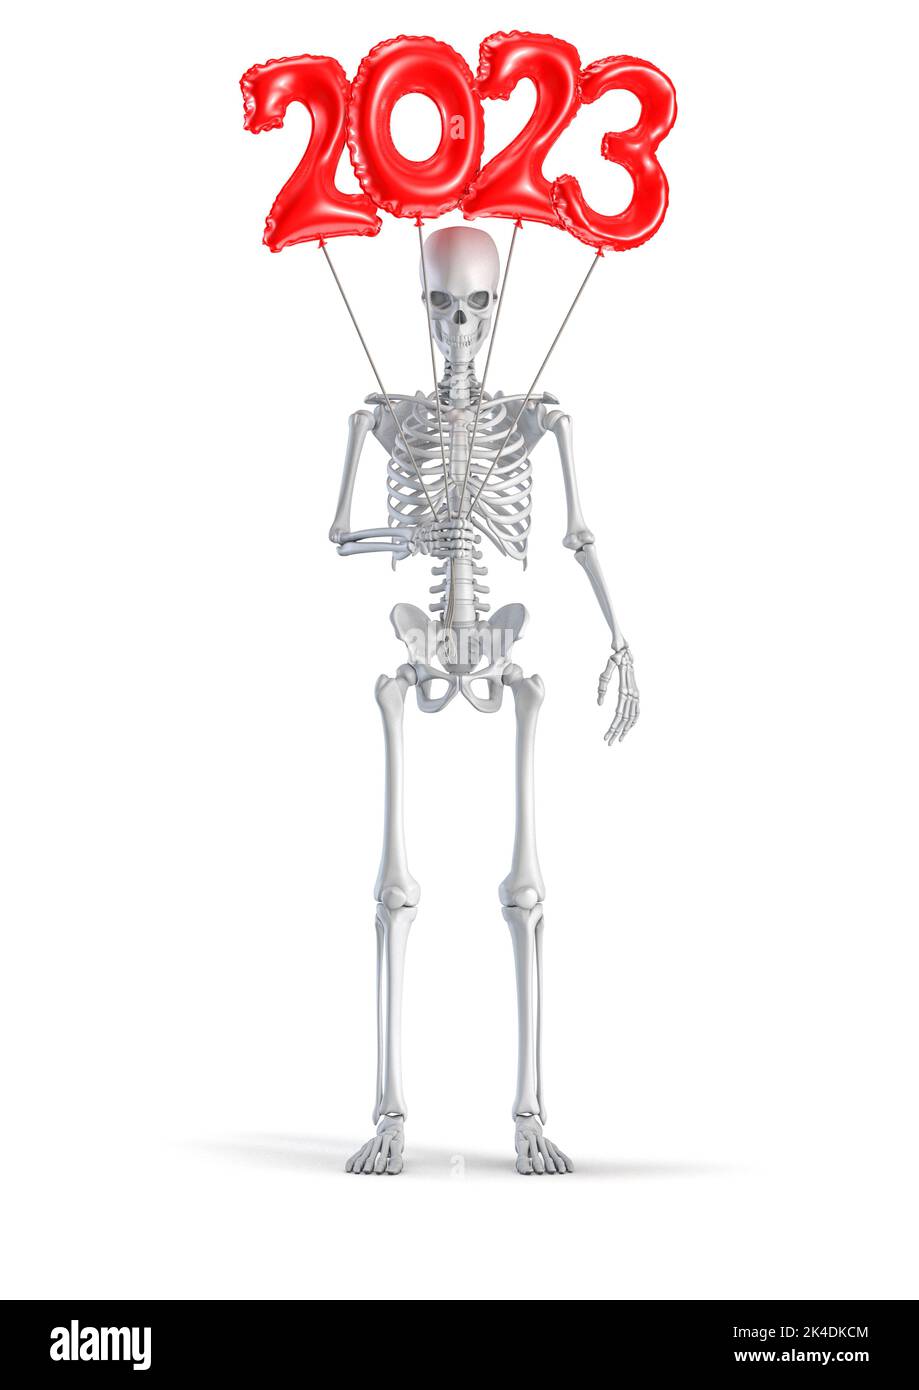 Skelett mit 2023 Ballon - 3D Abbildung der männlichen menschlichen Skelett Figur mit roten Kunststoff Nummer Jahr 2023 Ballons isoliert auf weißem Studio zurück Stockfoto